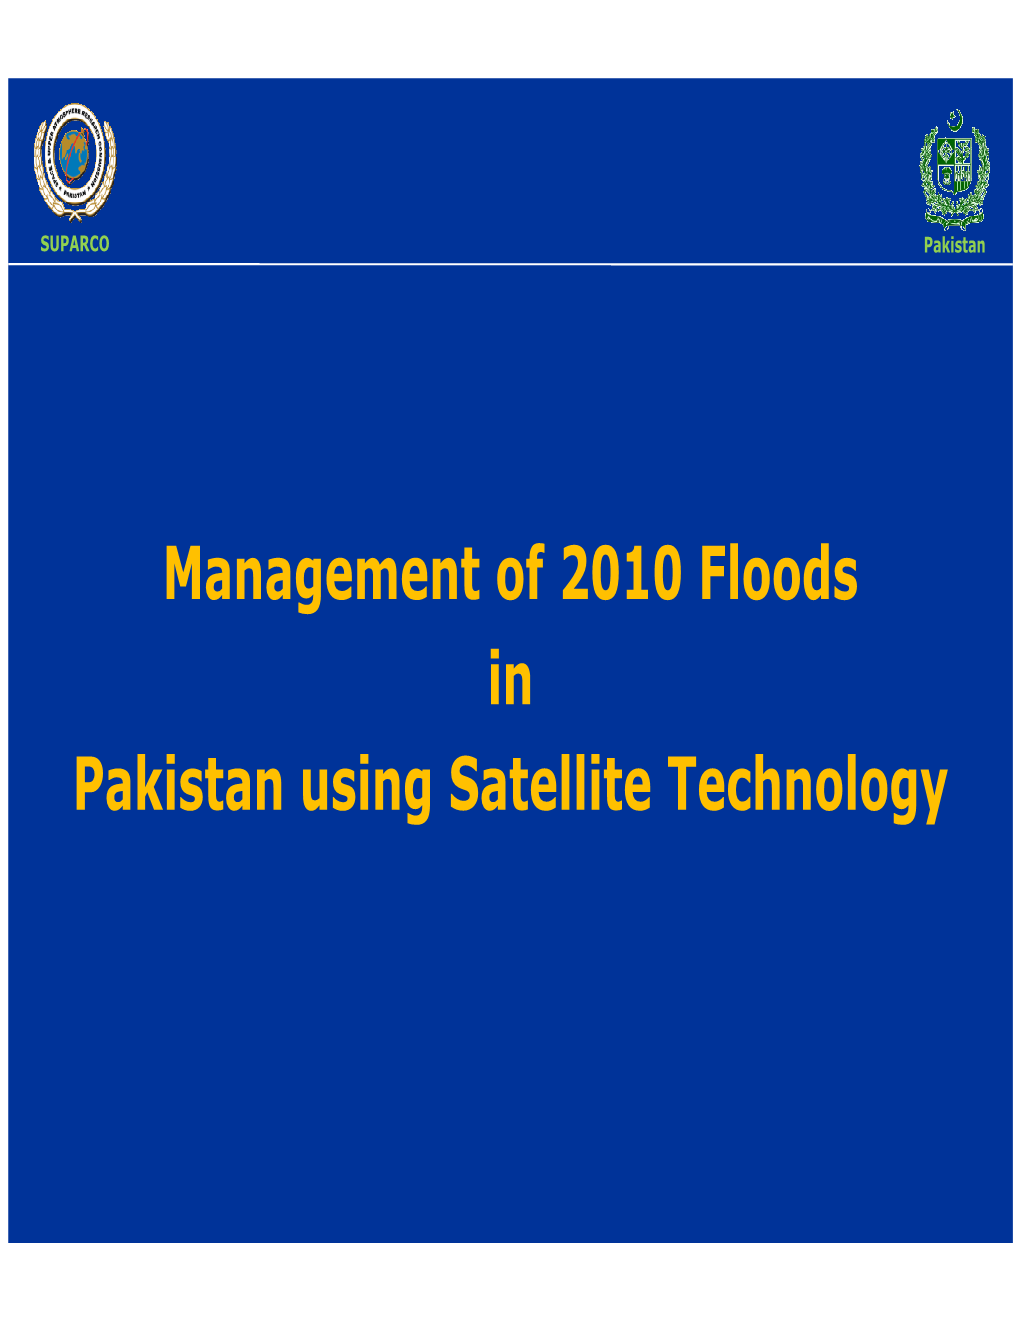 Management of 2010 Floods in Pakistan Using Satellite Technology Pakistanpakistan Floodsfloods -- 20102010